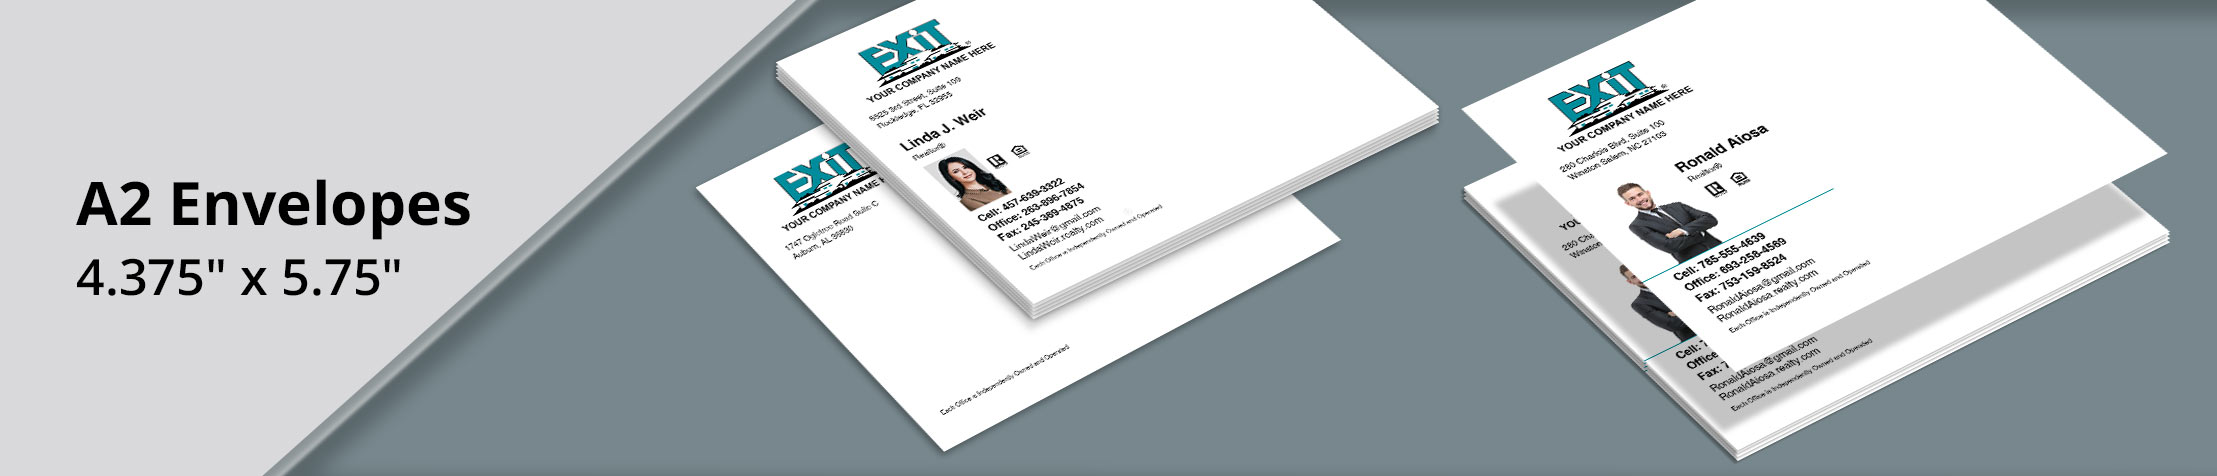 Exit Realty Real Estate A2 Envelopes - Exit Realty Approved Vendor custom stationery, A2 Standard envelopes for Realtors | BestPrintBuy.com